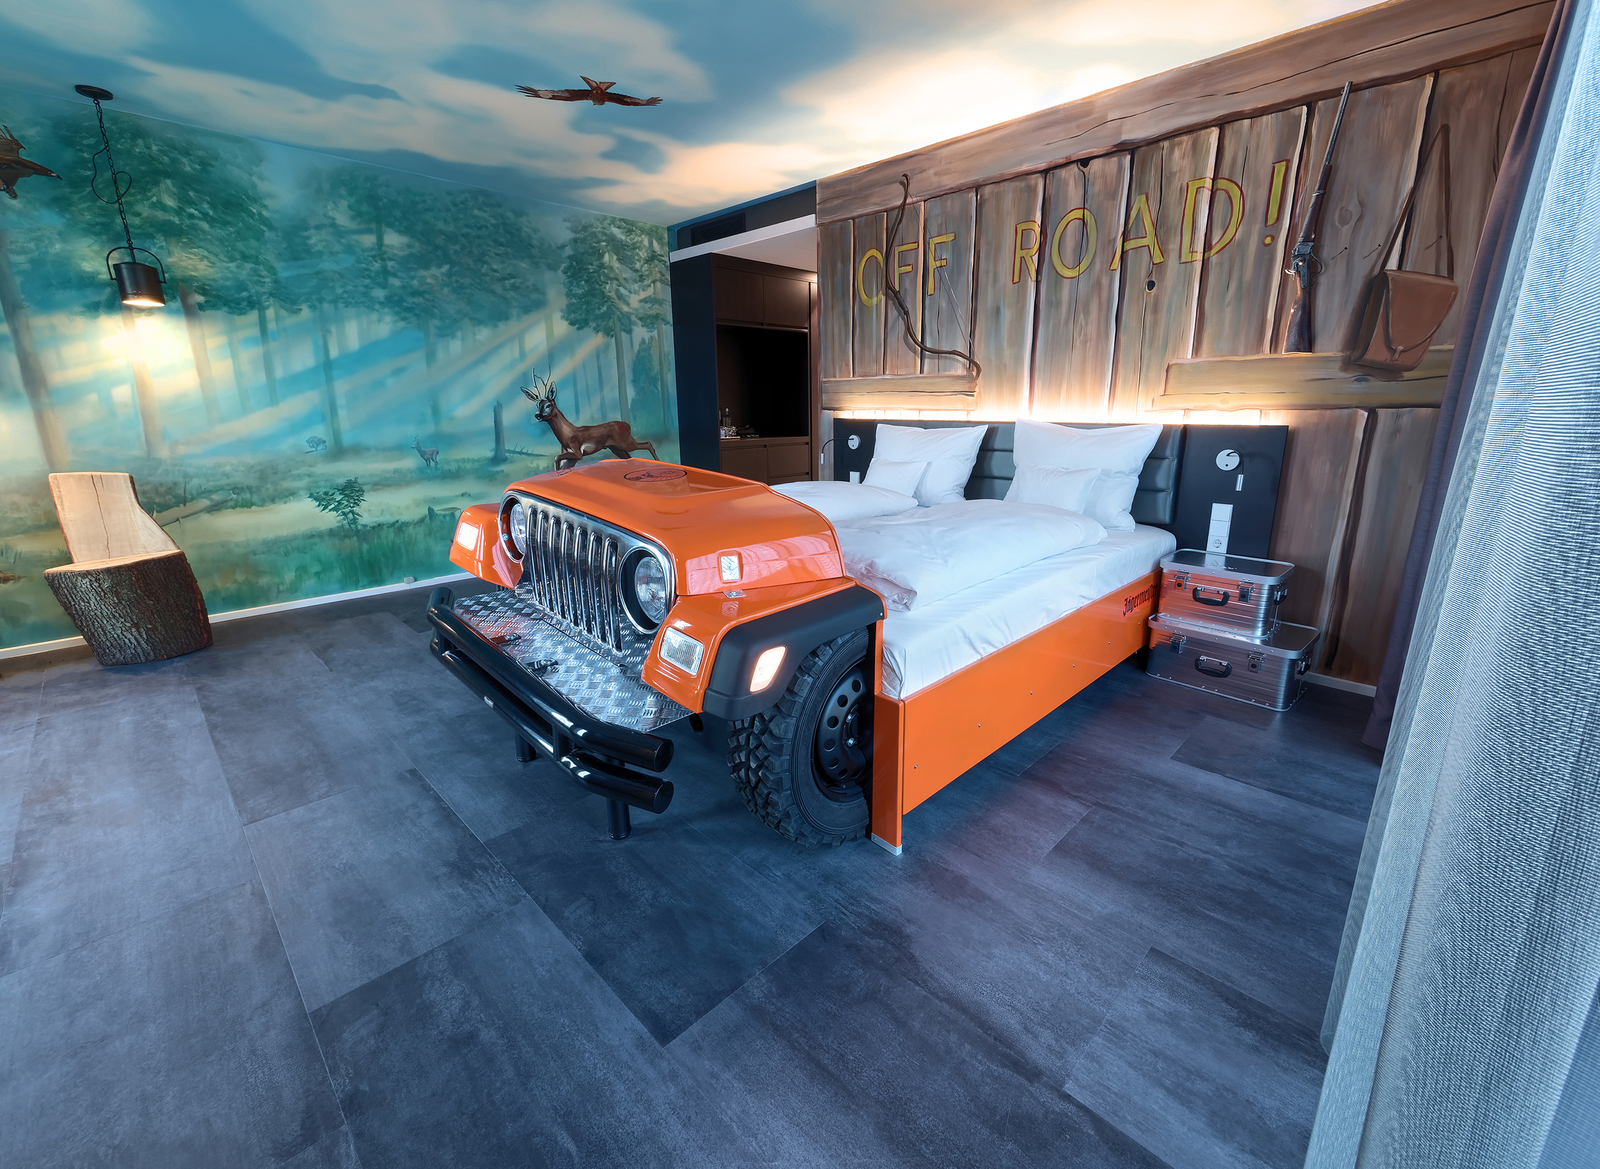 Orangefarbenes Autobett im Offroad-Themenzimmer im V8 Hotel mit bemalten Wänden im Holz- und Walddesign